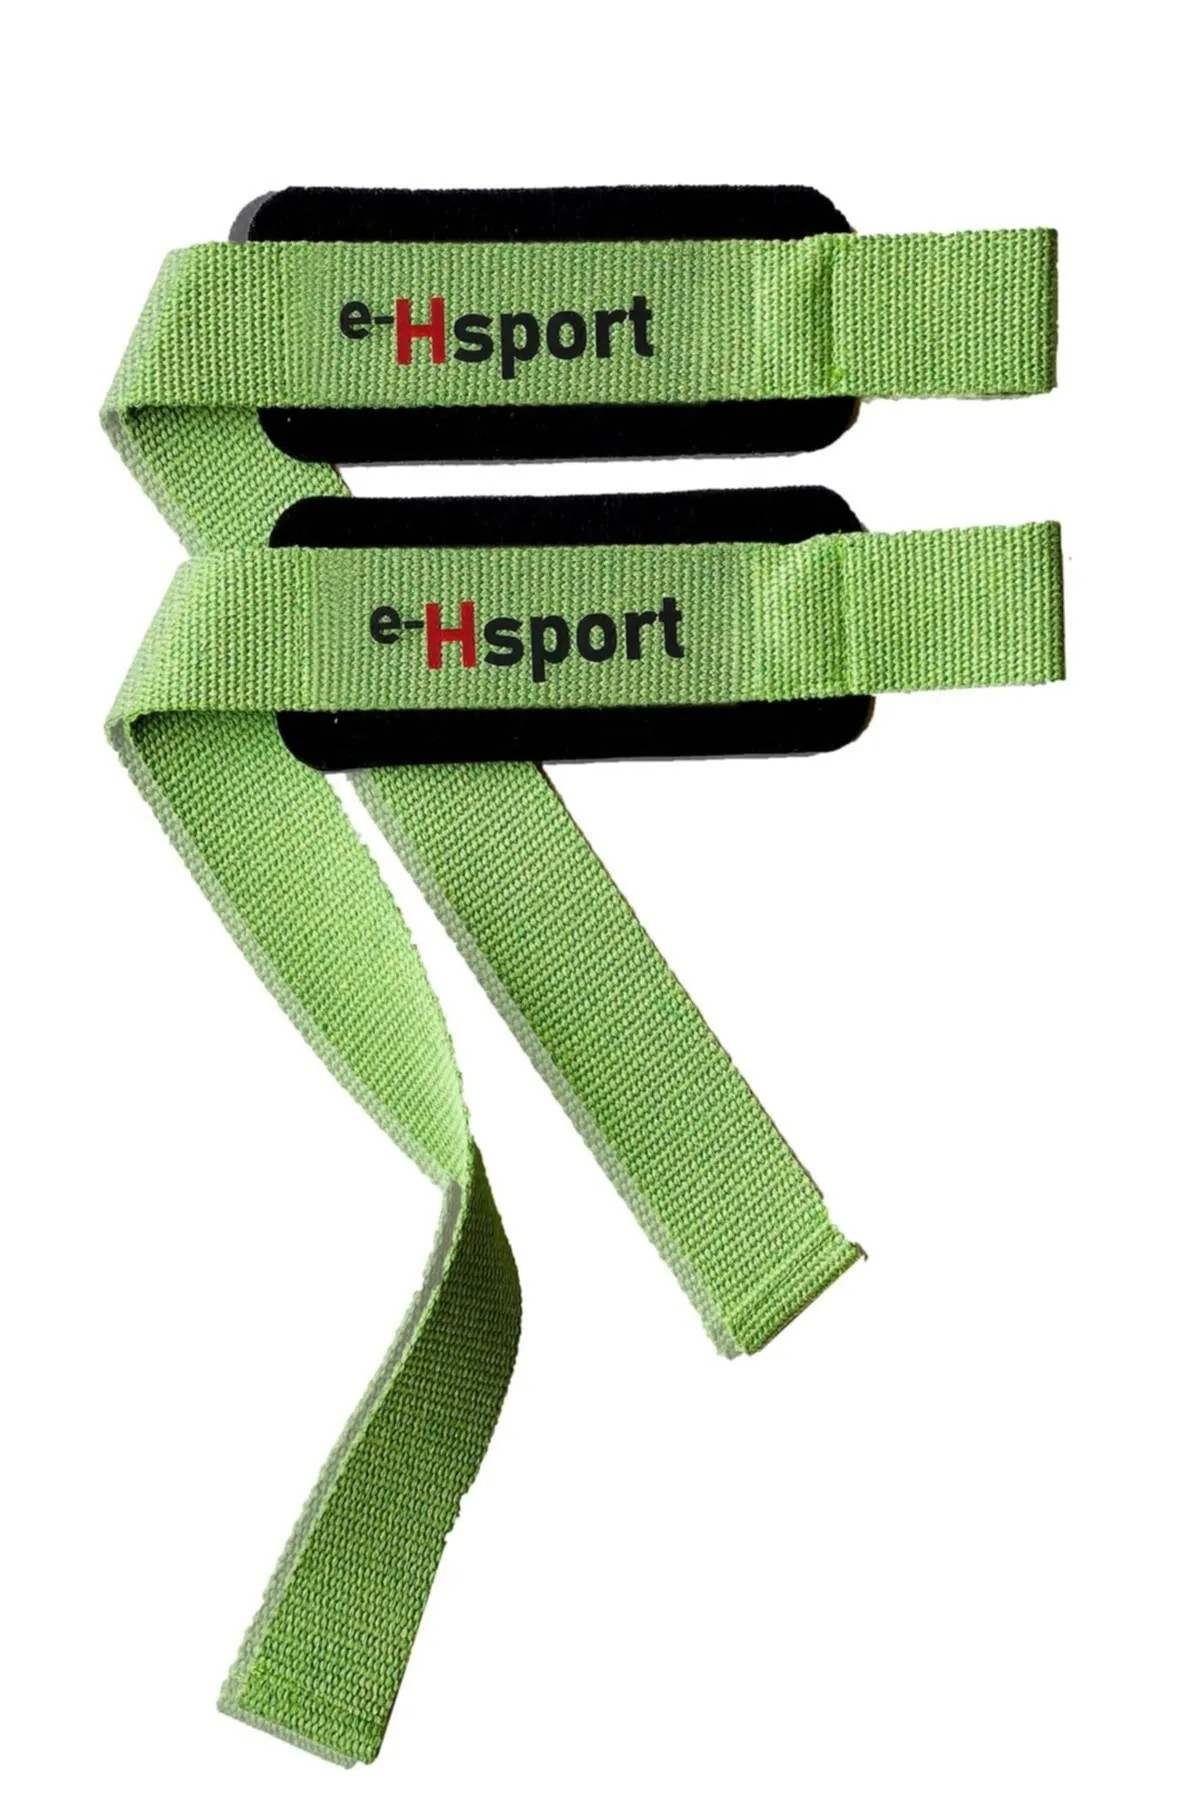 E-HSPORT Ağırlık Kaldırma Kayışı Ağırlık Kayışı Wrist Strap